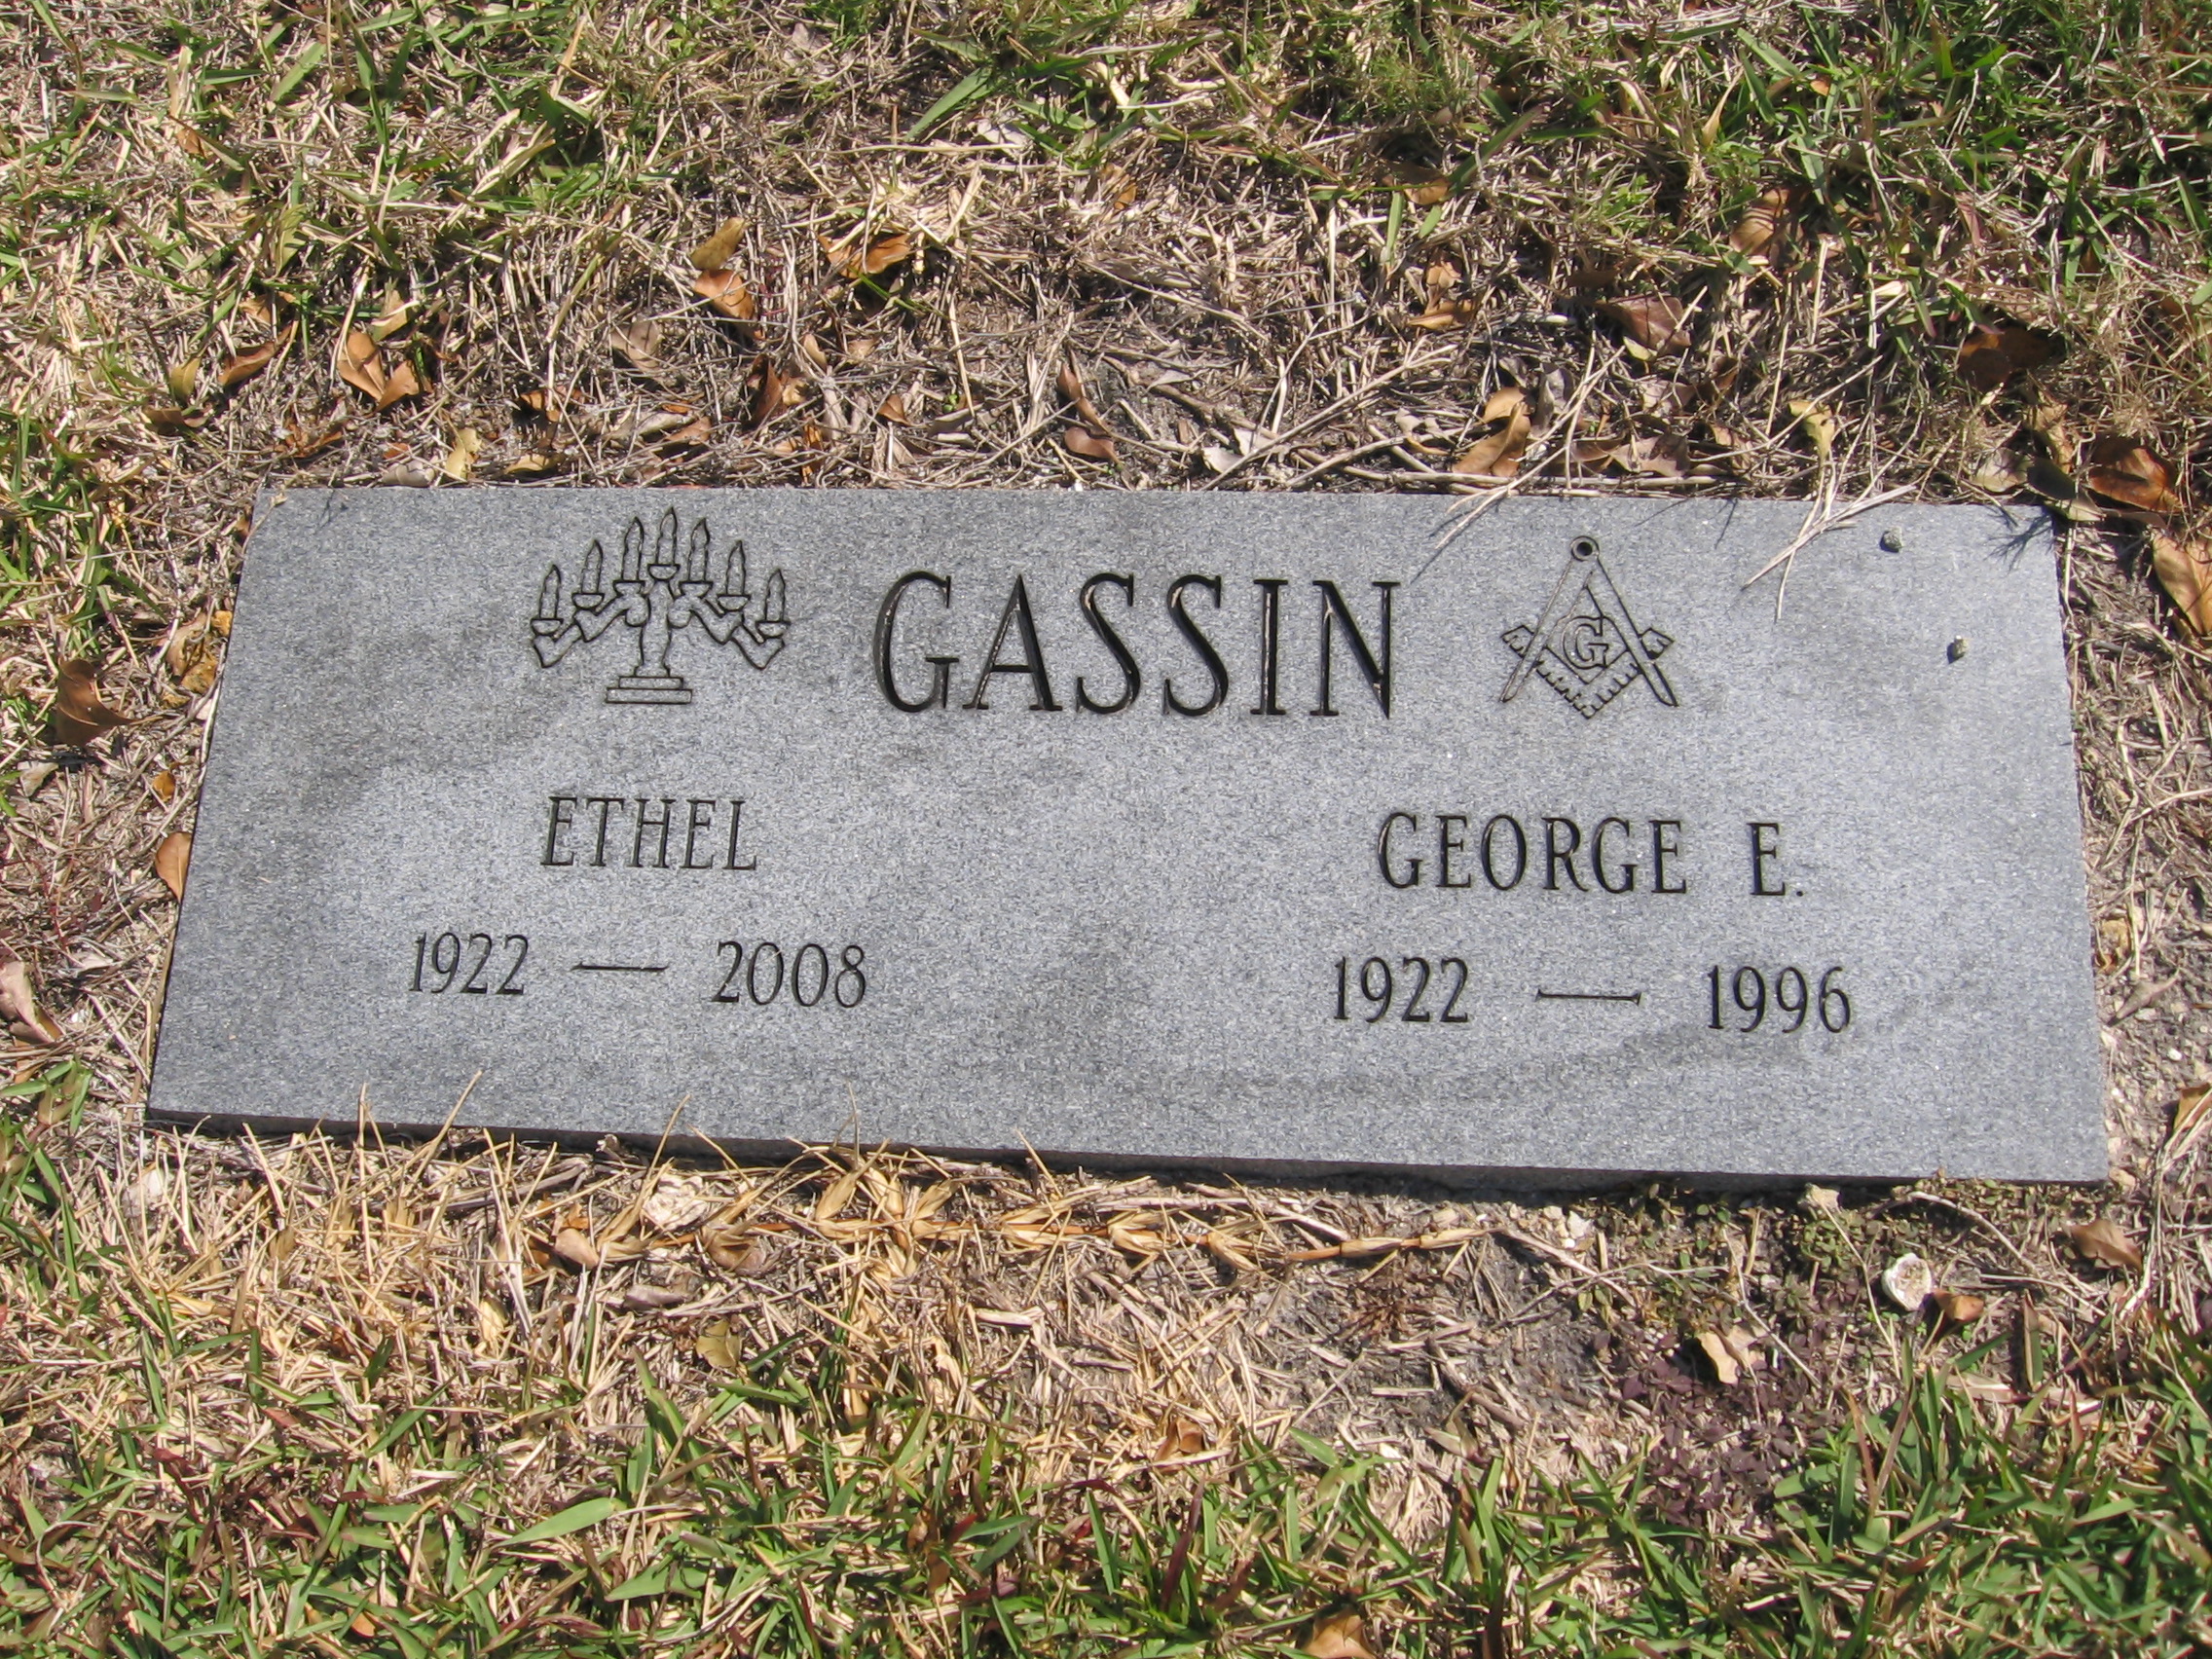 Ethel Gassin